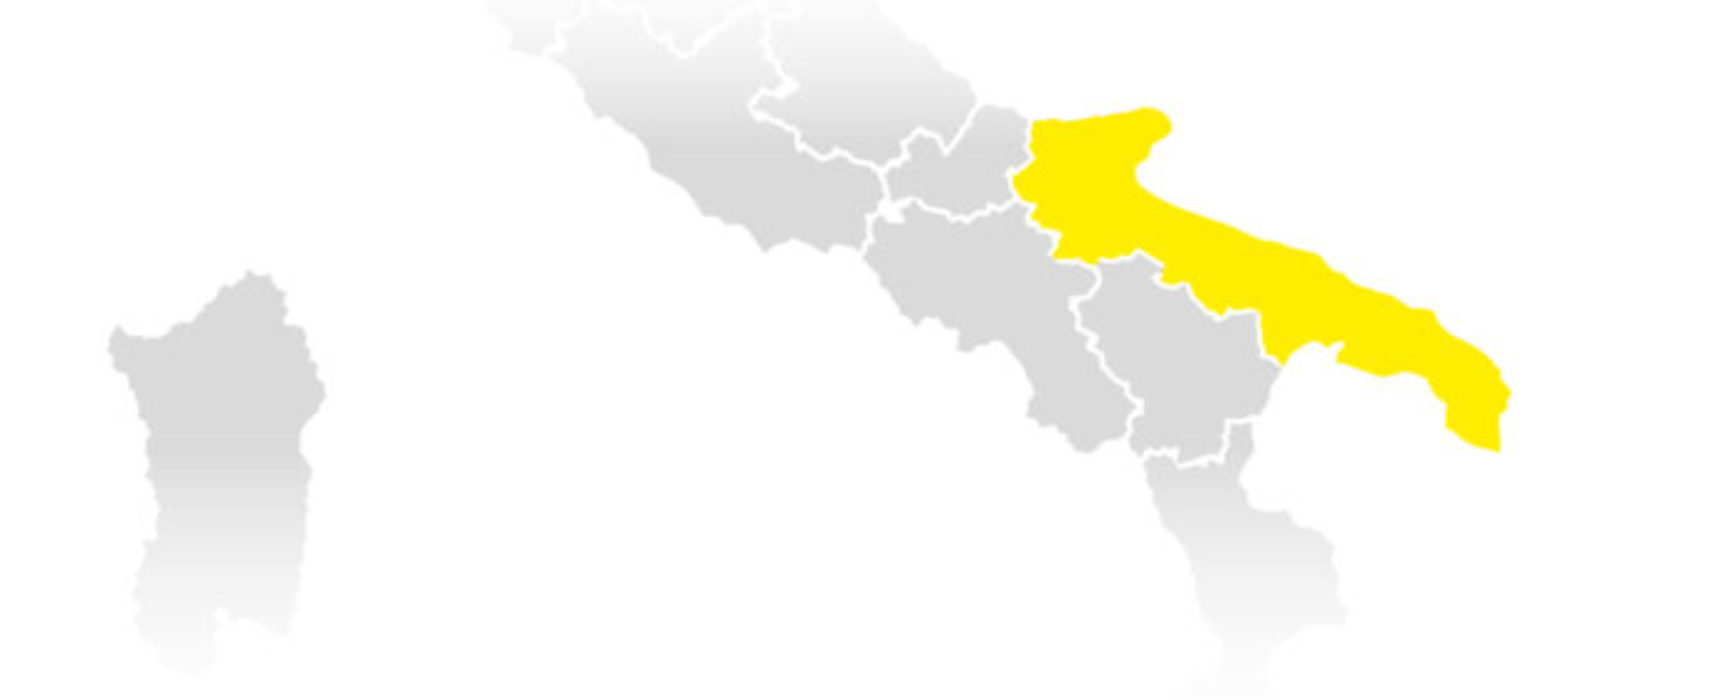 Tornano le fasce di rischio per le regioni: da lunedì la Puglia sarà gialla / DETTAGLI